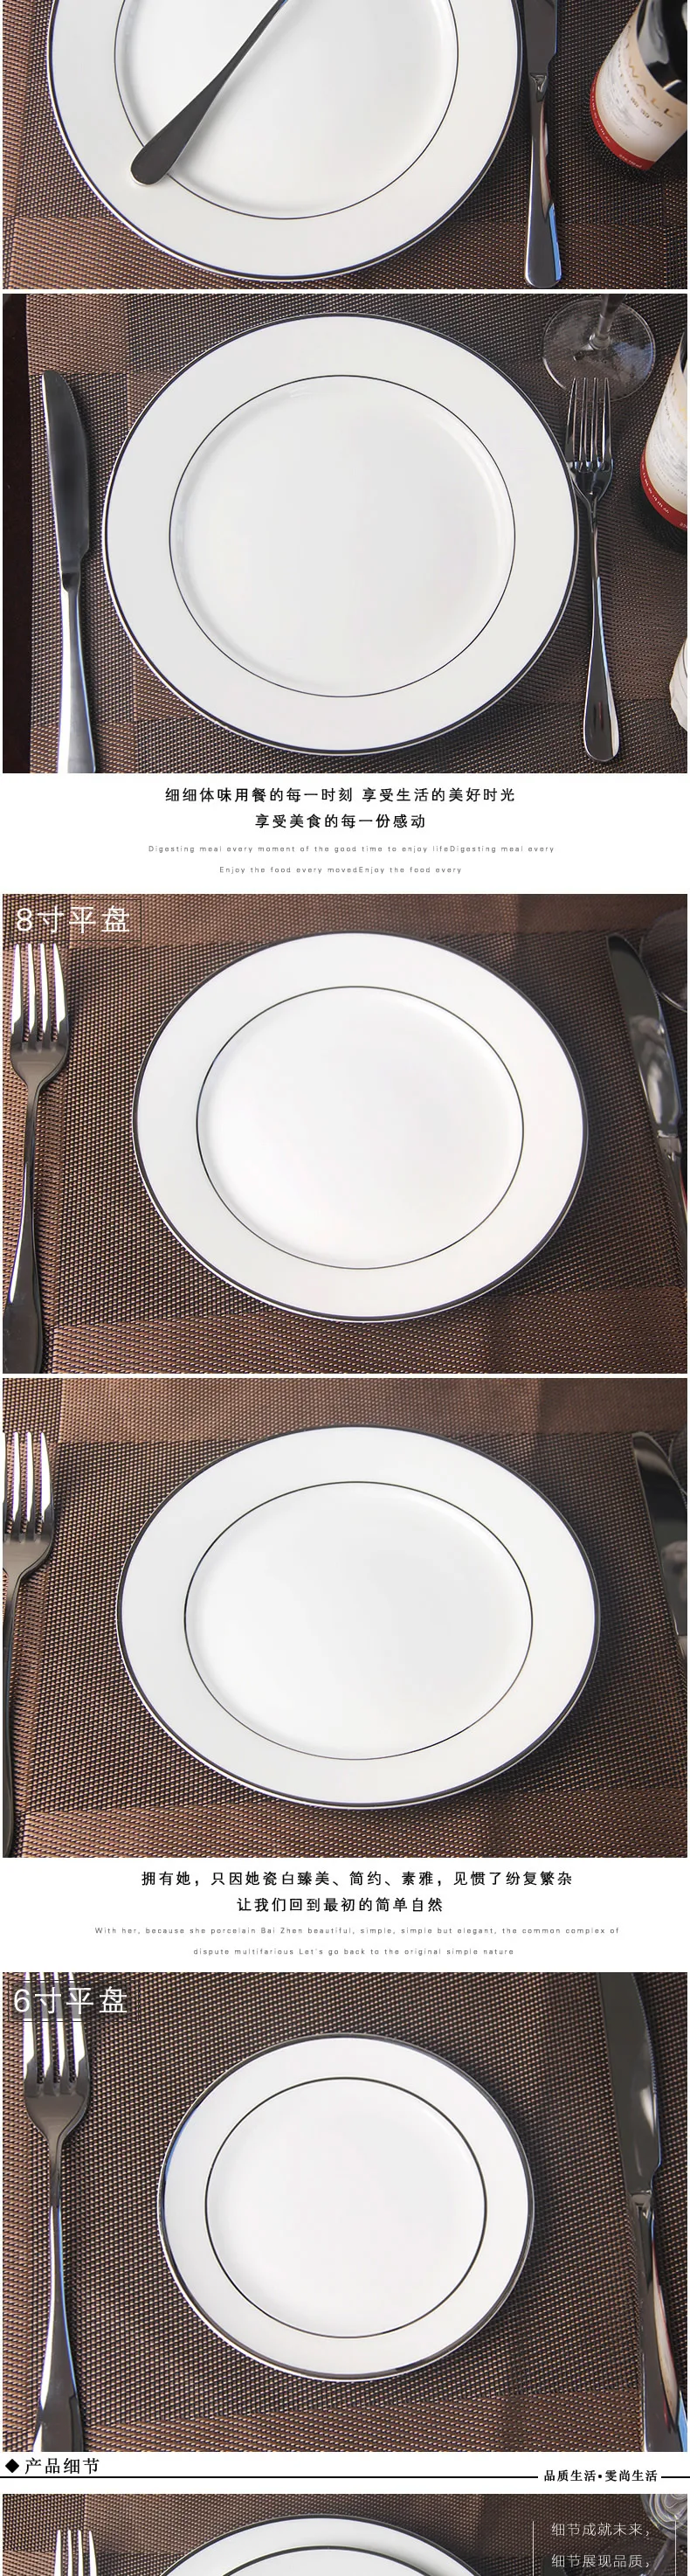 Упакованная керамическая столовая посуда из китайского фарфора серебристое окаймление плоская тарелка Beefsteak отель Бытовая утварь миска для фруктов пельменки посуда